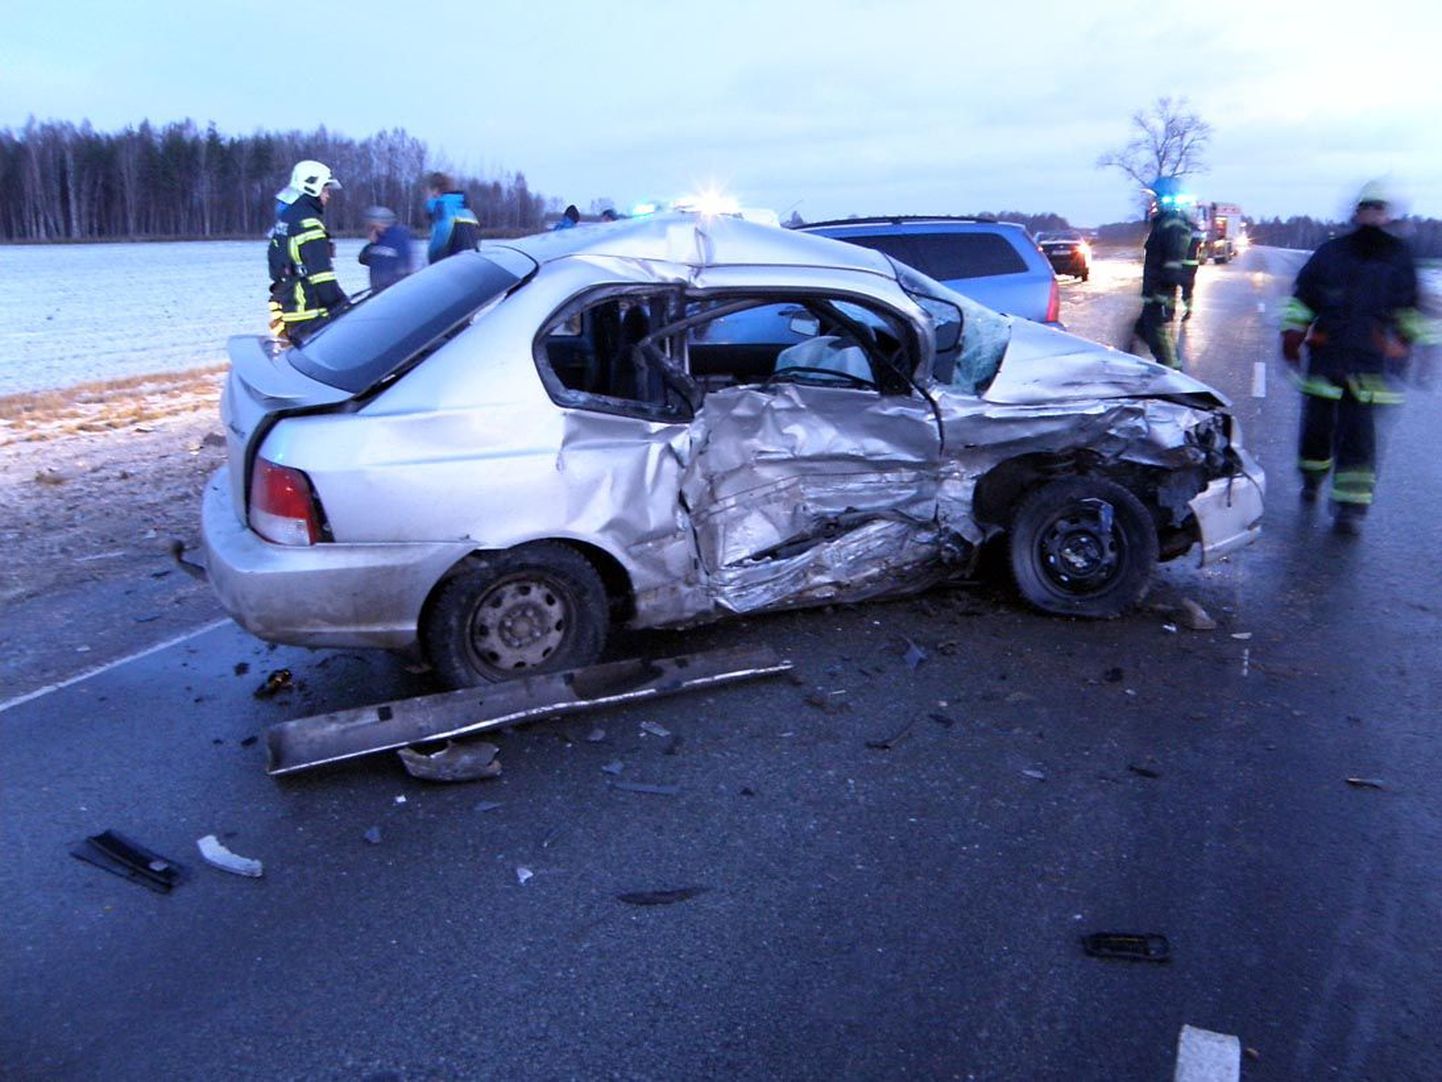 Jõhvi-Tartu-Valga maanteel Nõo lähedal juhtus 10. detsembril liiklusõnnetus, milles said vigastada kolm inimest.